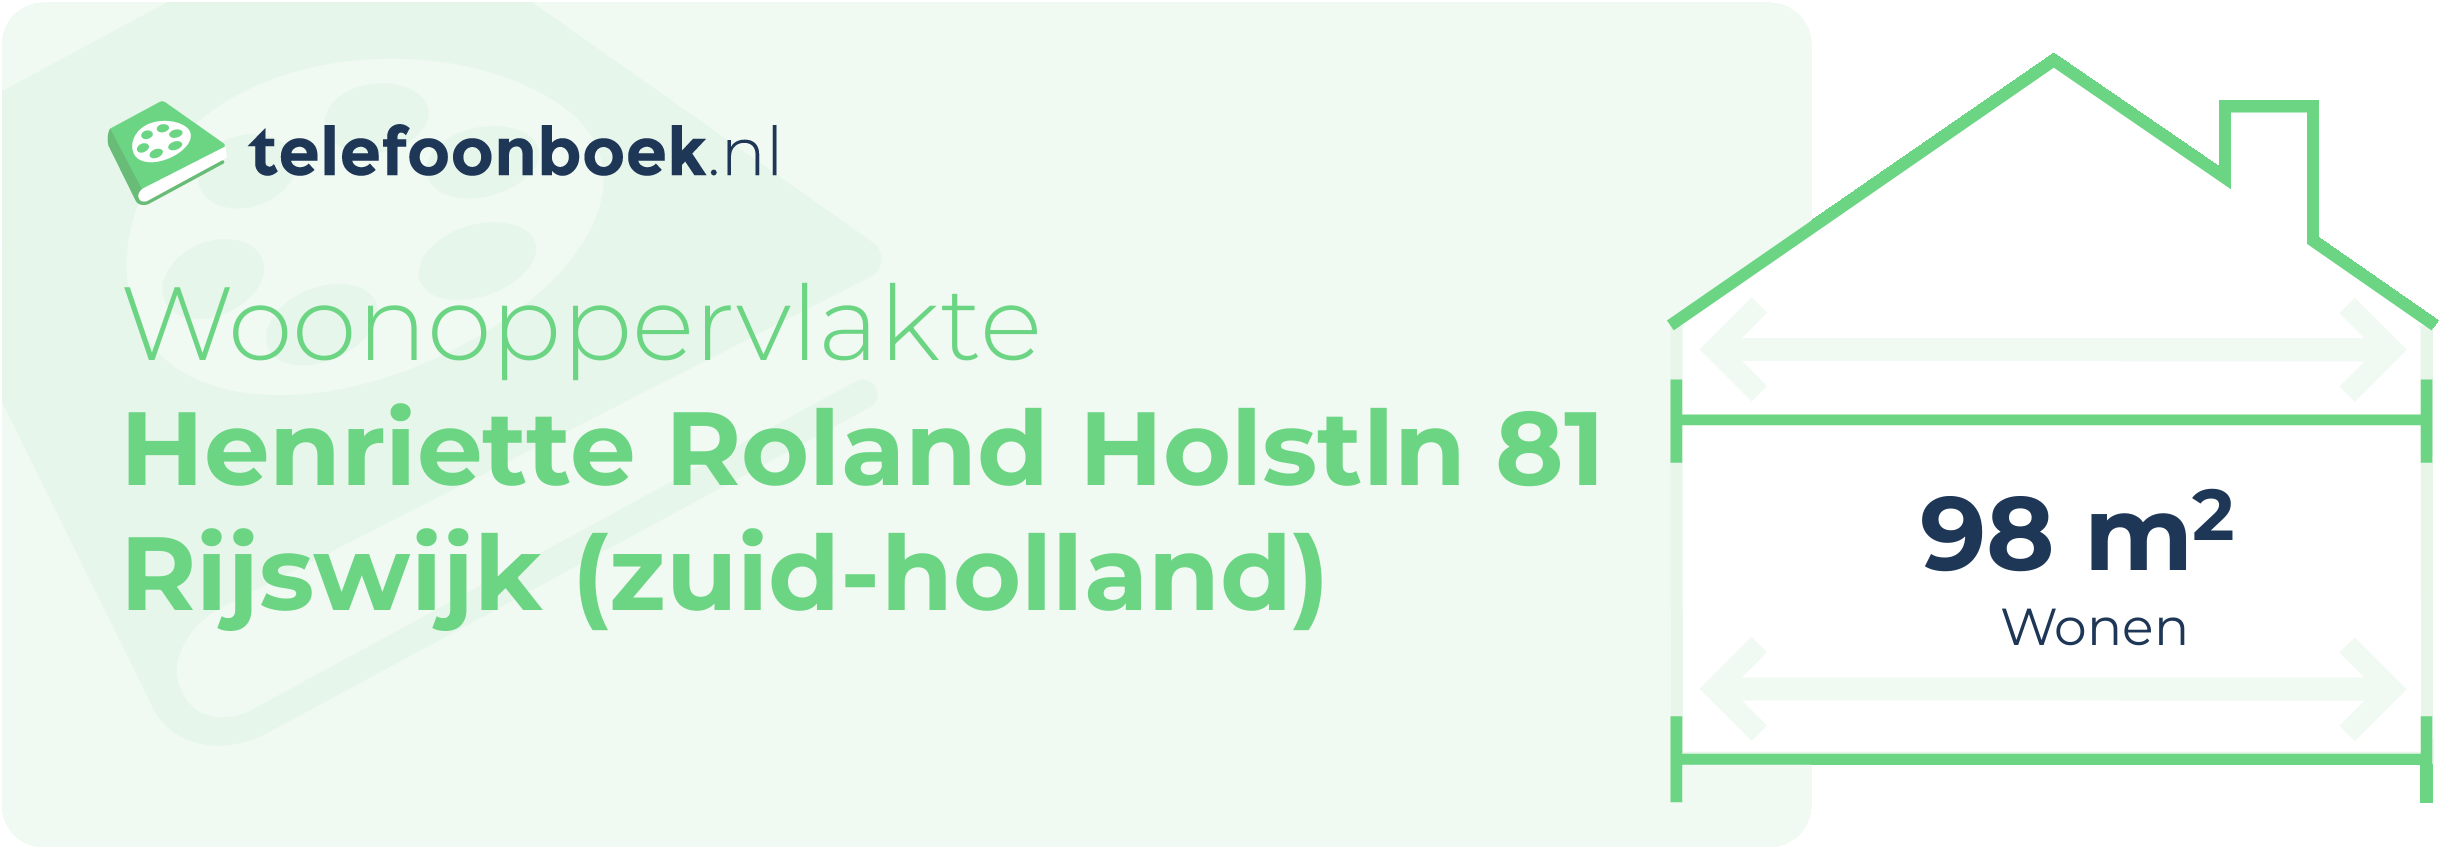 Woonoppervlakte Henriette Roland Holstln 81 Rijswijk (Zuid-Holland)